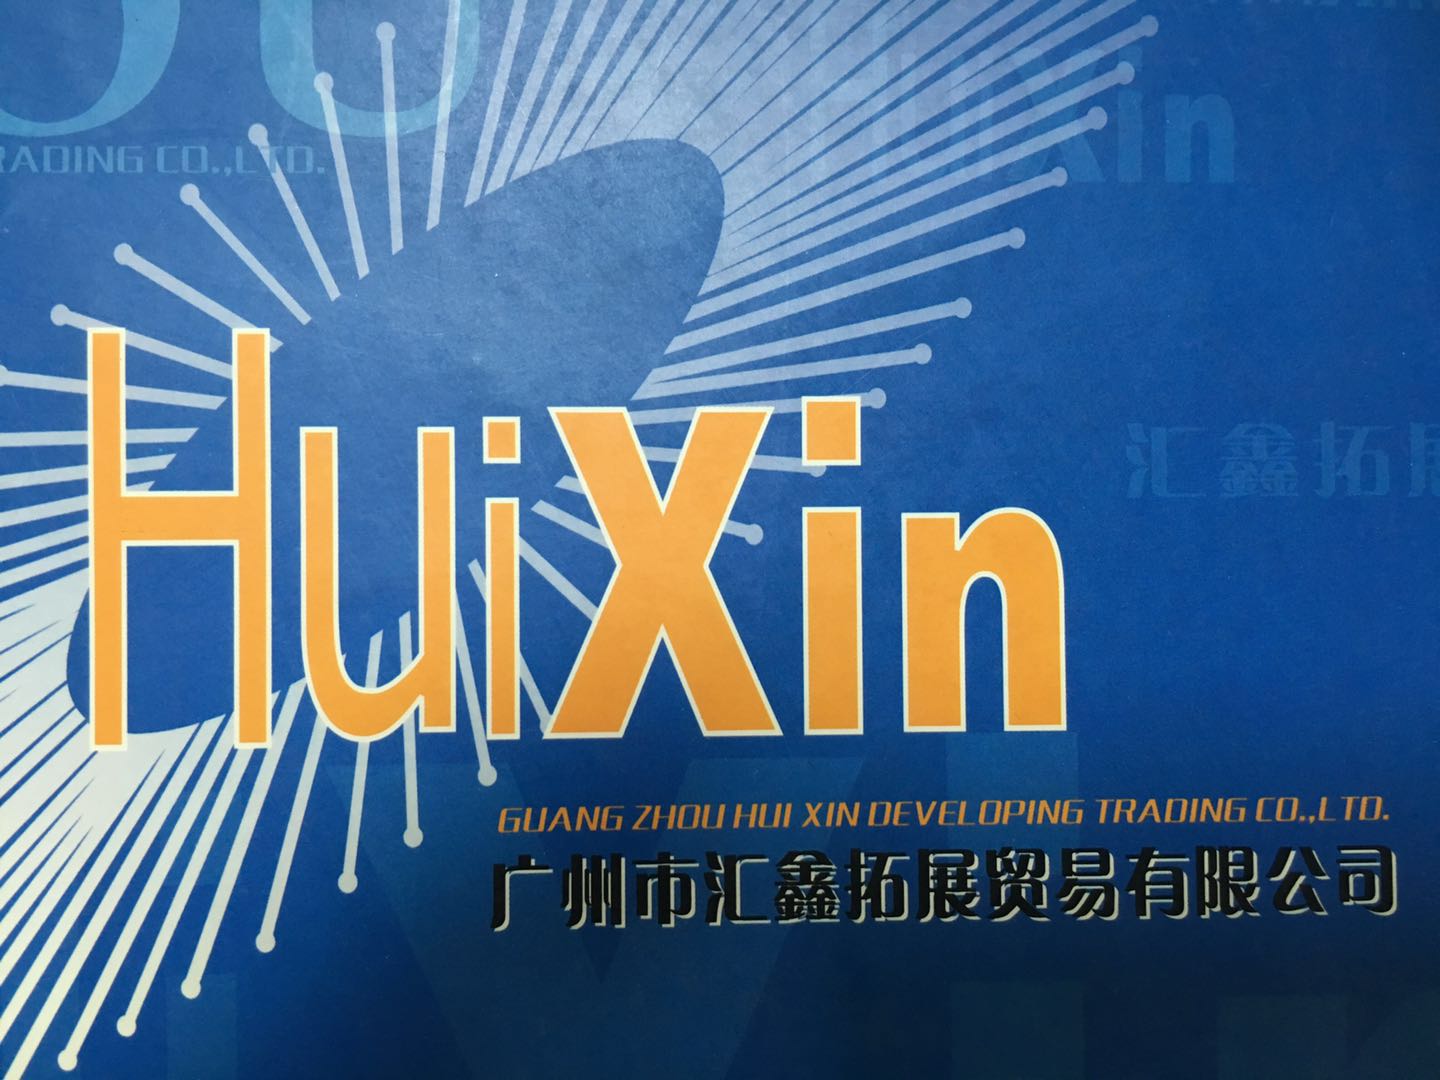 GUANGZHOU HUIXIN DEVELOPING TRADING CO.,LTD.